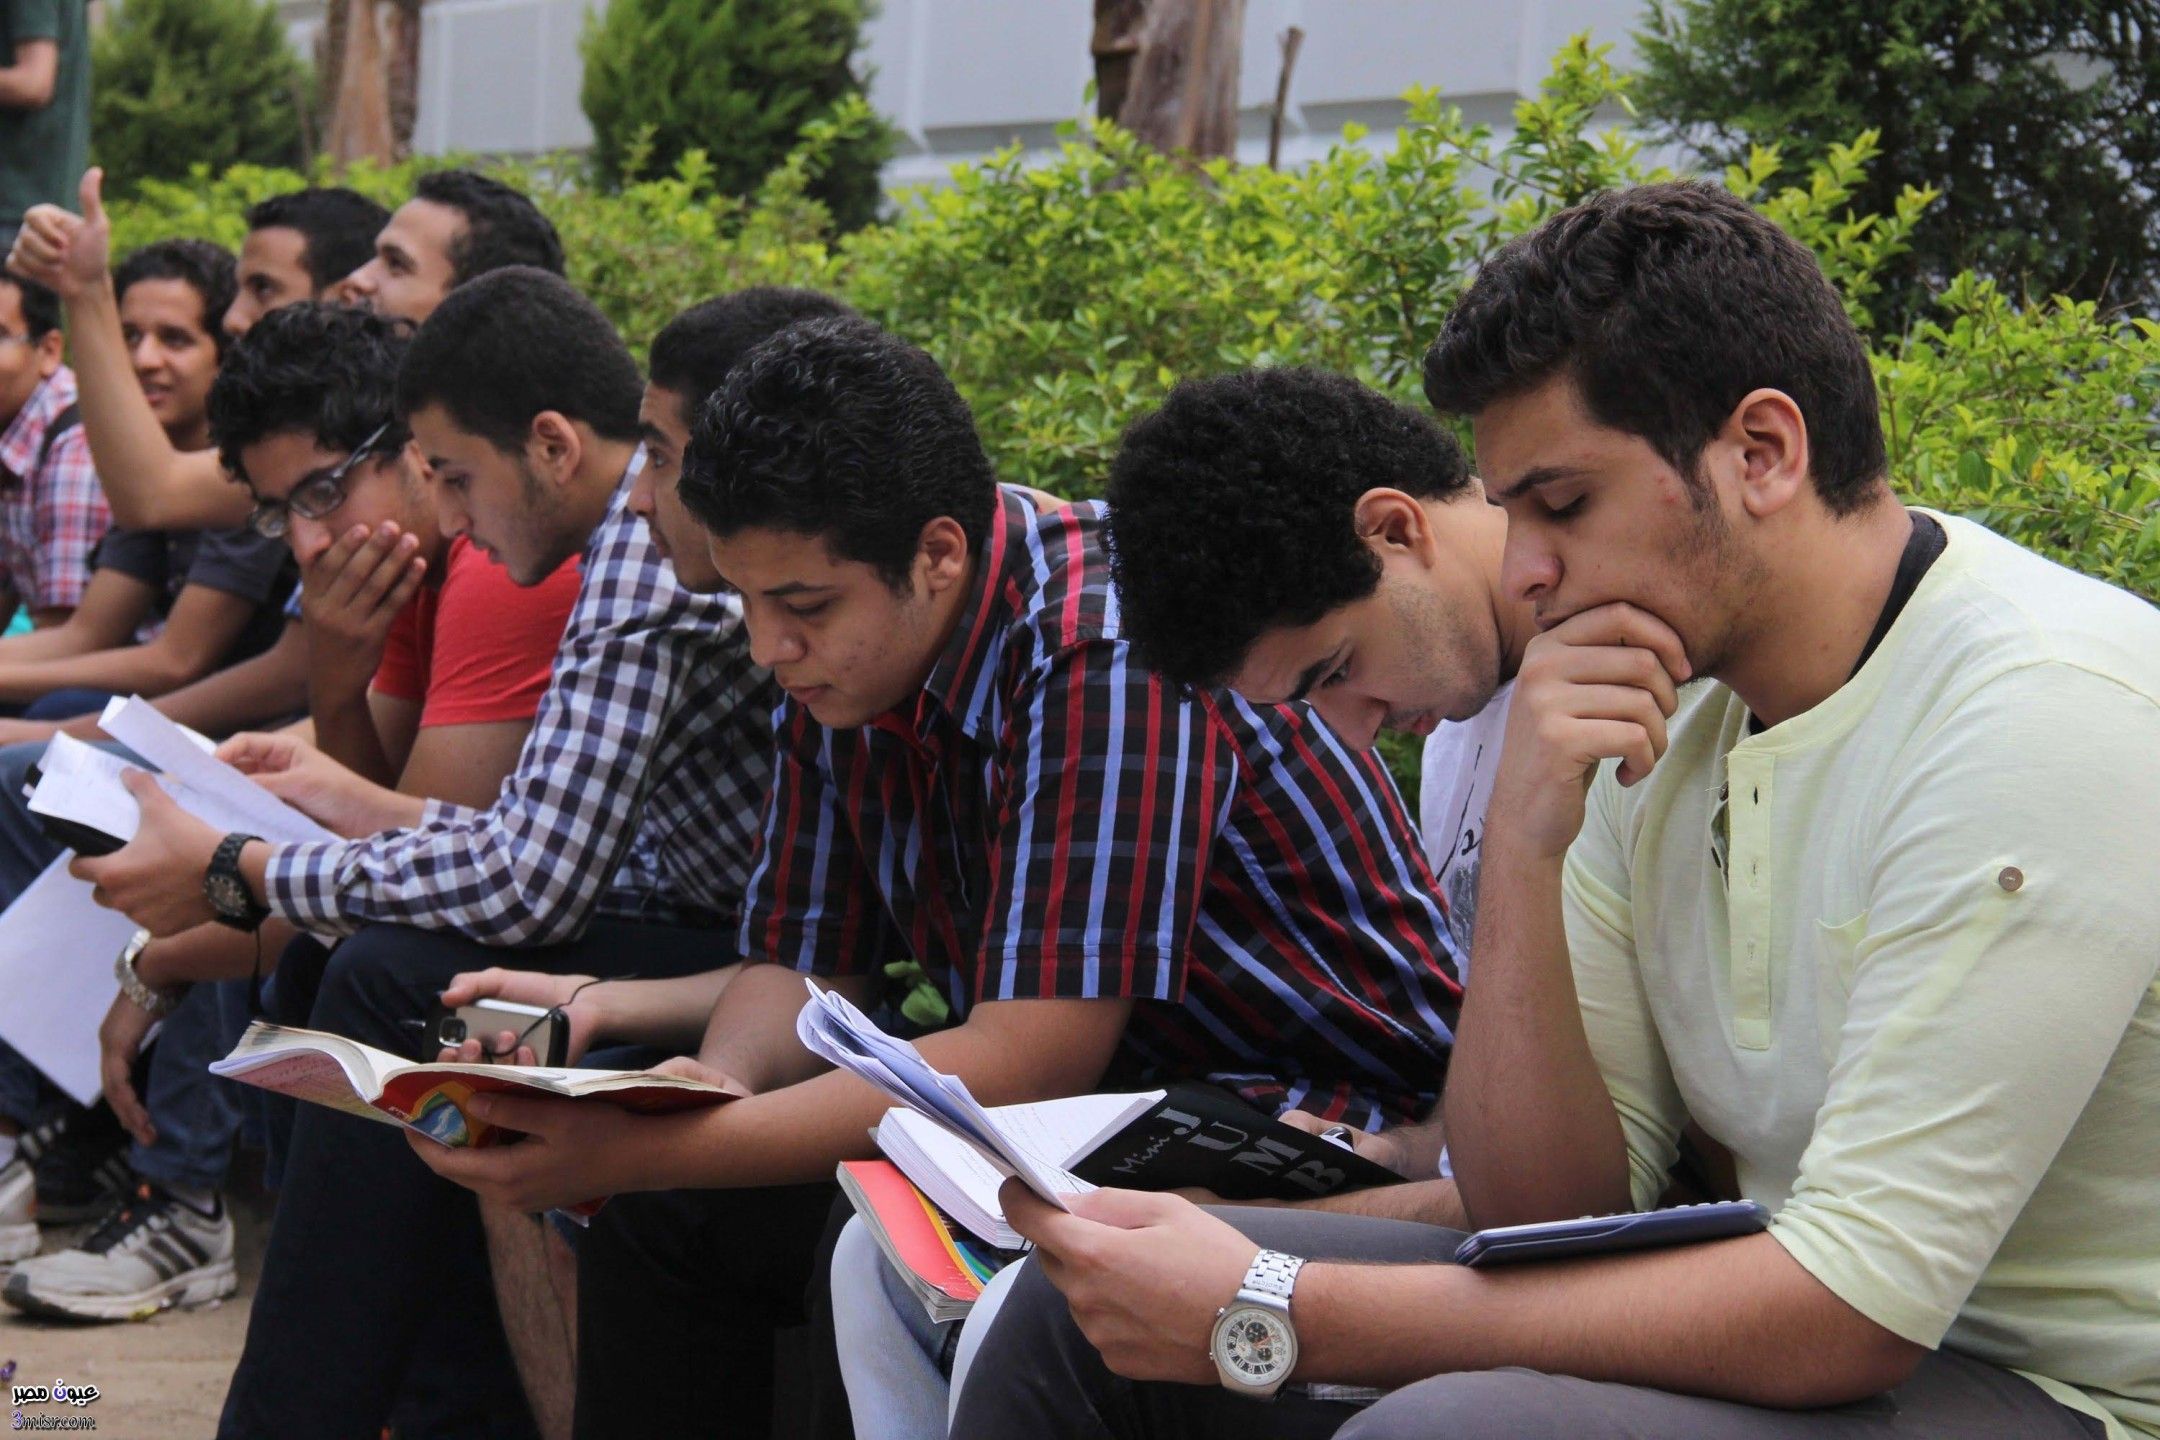 c8d53c60b6 - شغال. موقع وزارة التربية والتعليم اليمن رابط نتيجة الثانوية العامة اليمنية 2022 برقم الجلوس